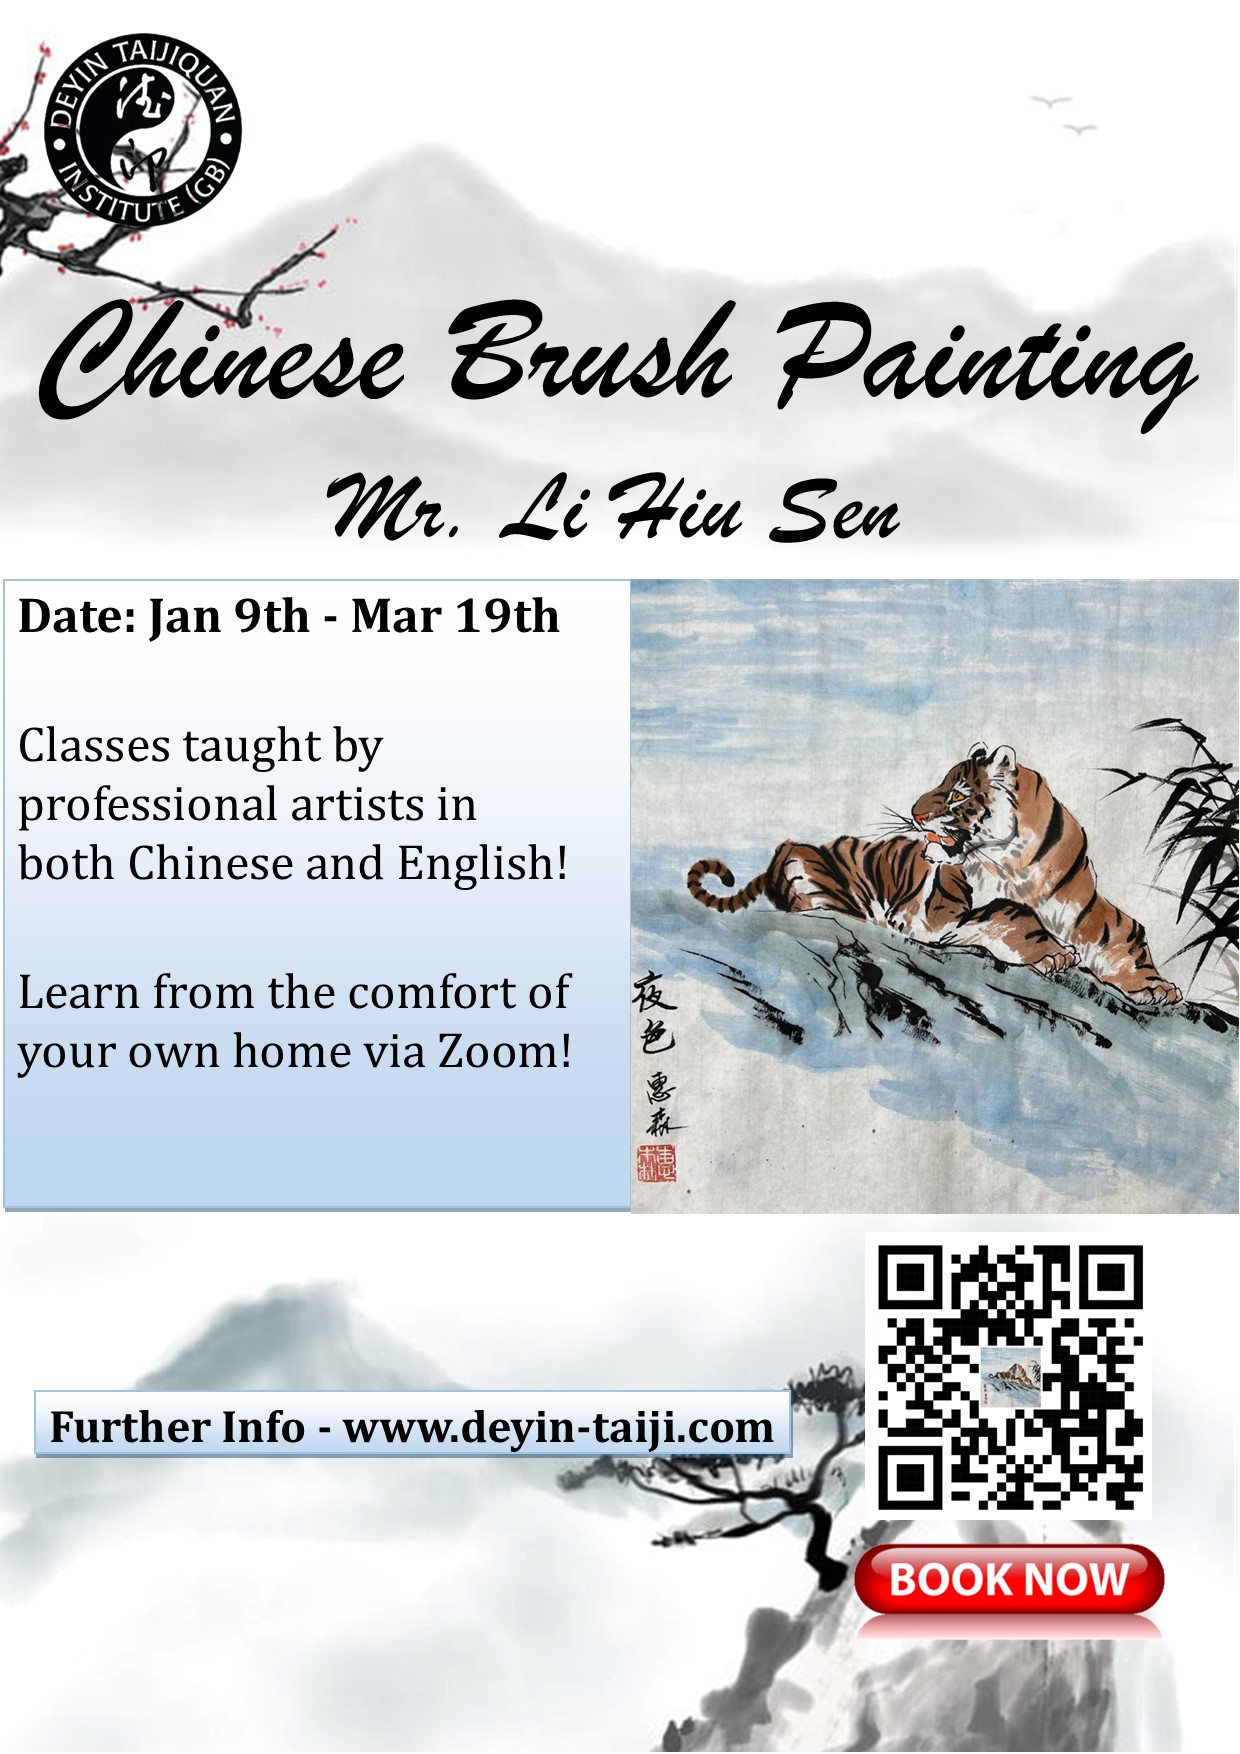 Chinese Brush Painting Classes